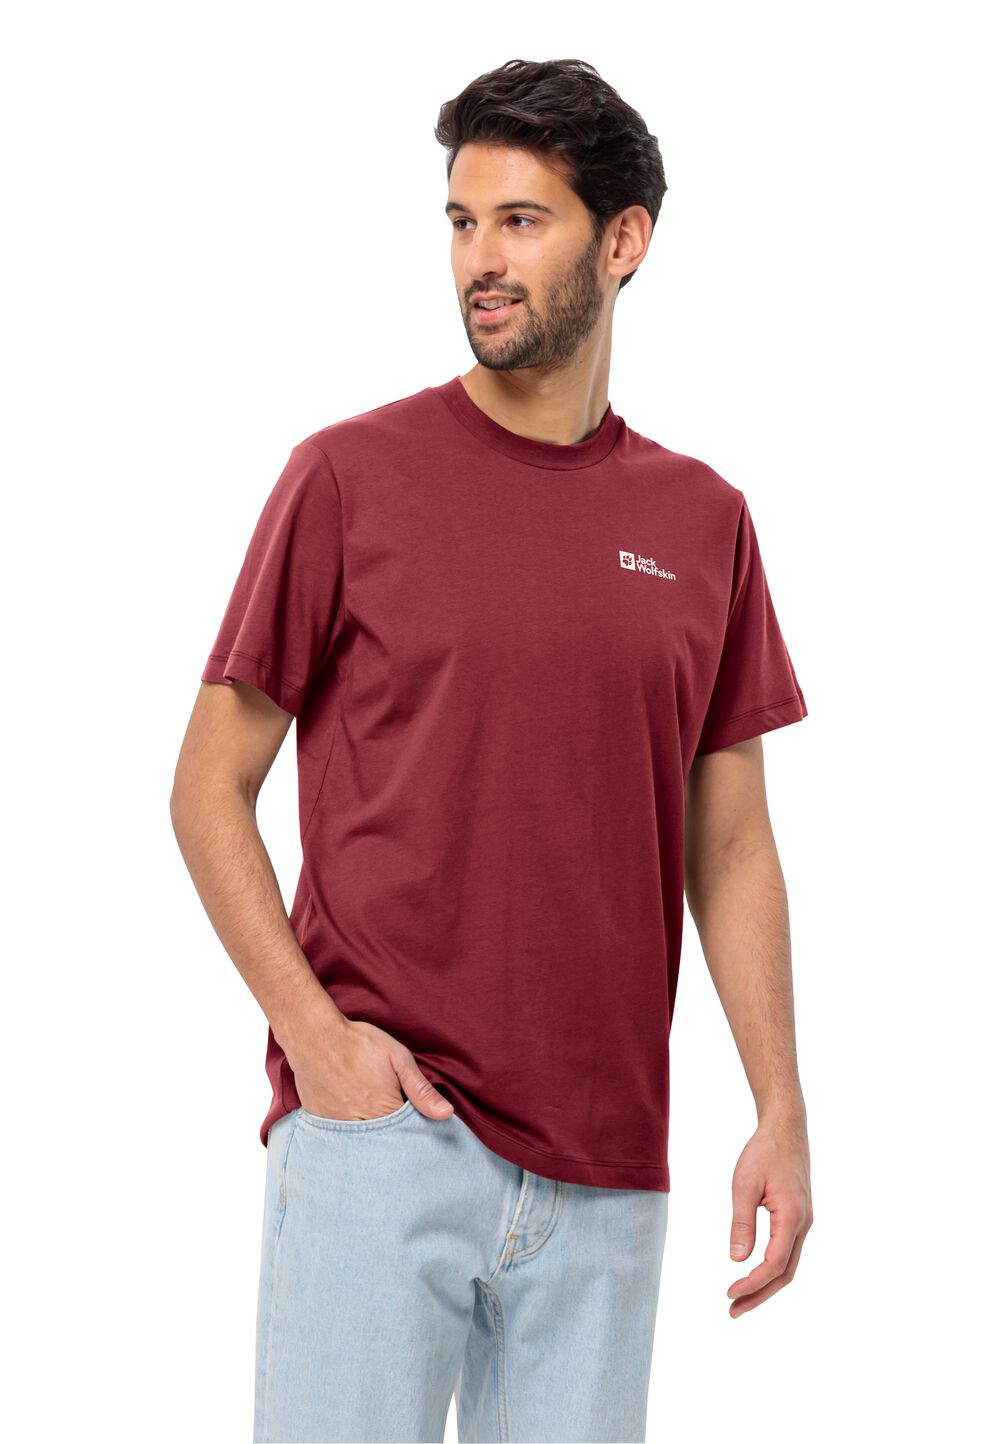 Jack Wolfskin Essential T-Shirt Men Heren T-shirt van biologisch katoen XL purper deep ruby